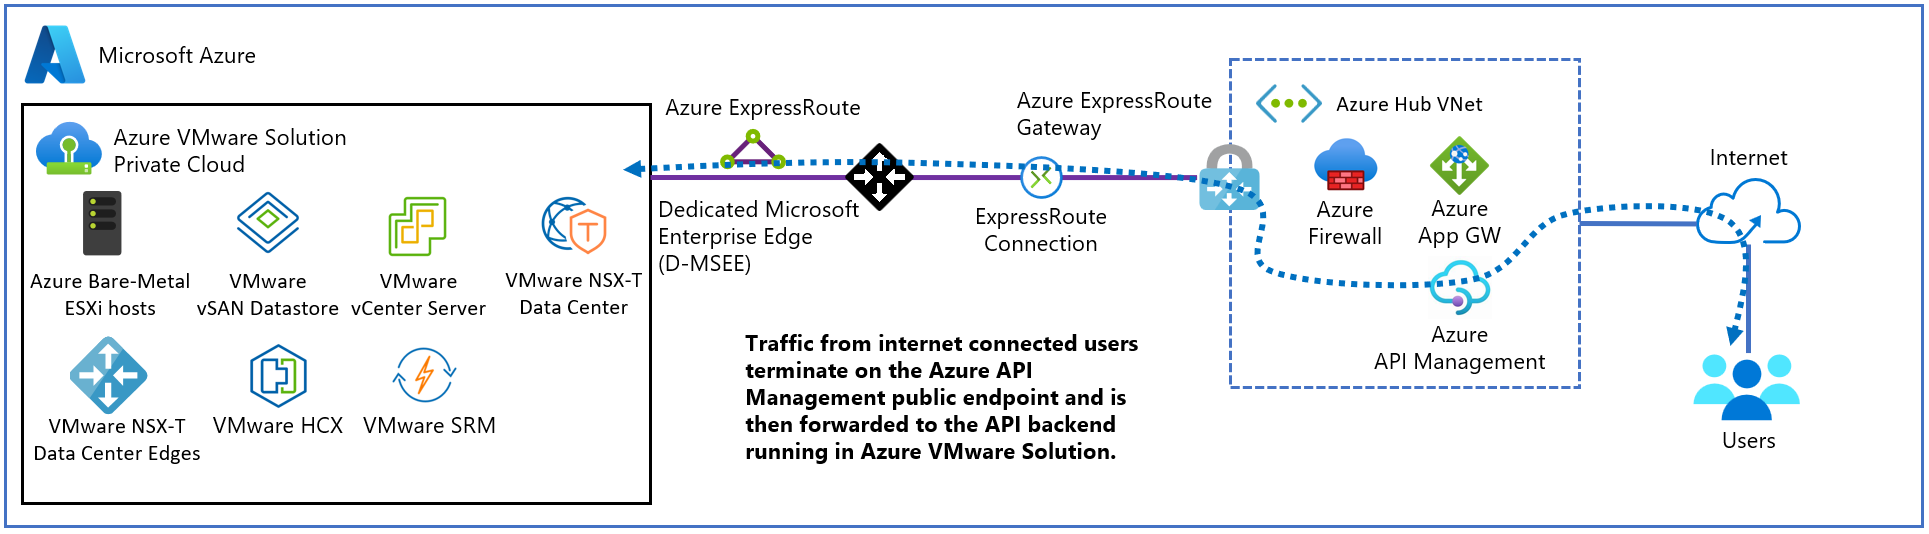 Diagrama mostrando uma implantação de Gerenciamento de API externa para a Solução VMware do Azure